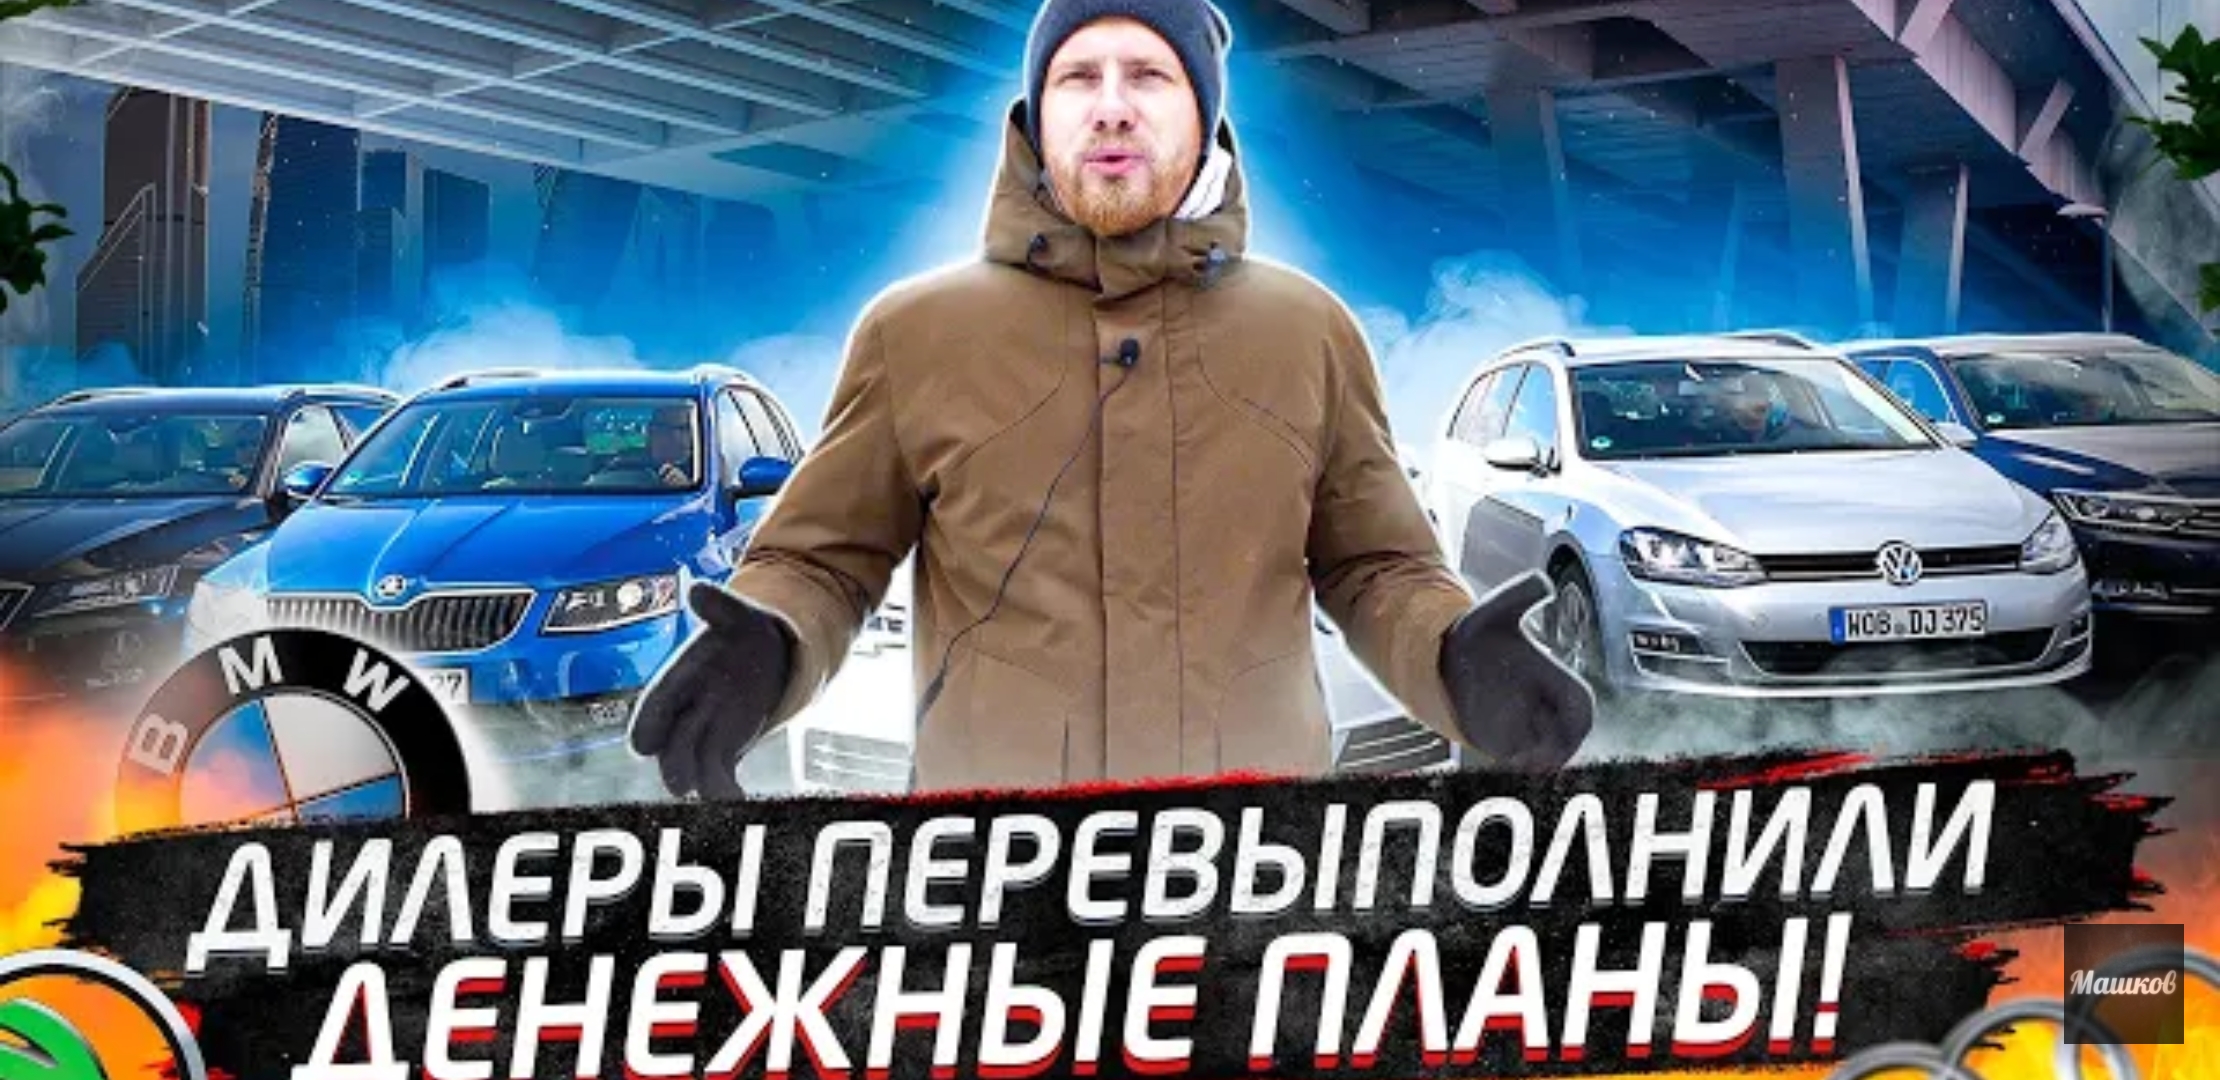 Анонс видео-теста "Бедные россияне" продолжали скупать машины с наценкой, допами, дикими кредитами. Итоги декабря 2020 